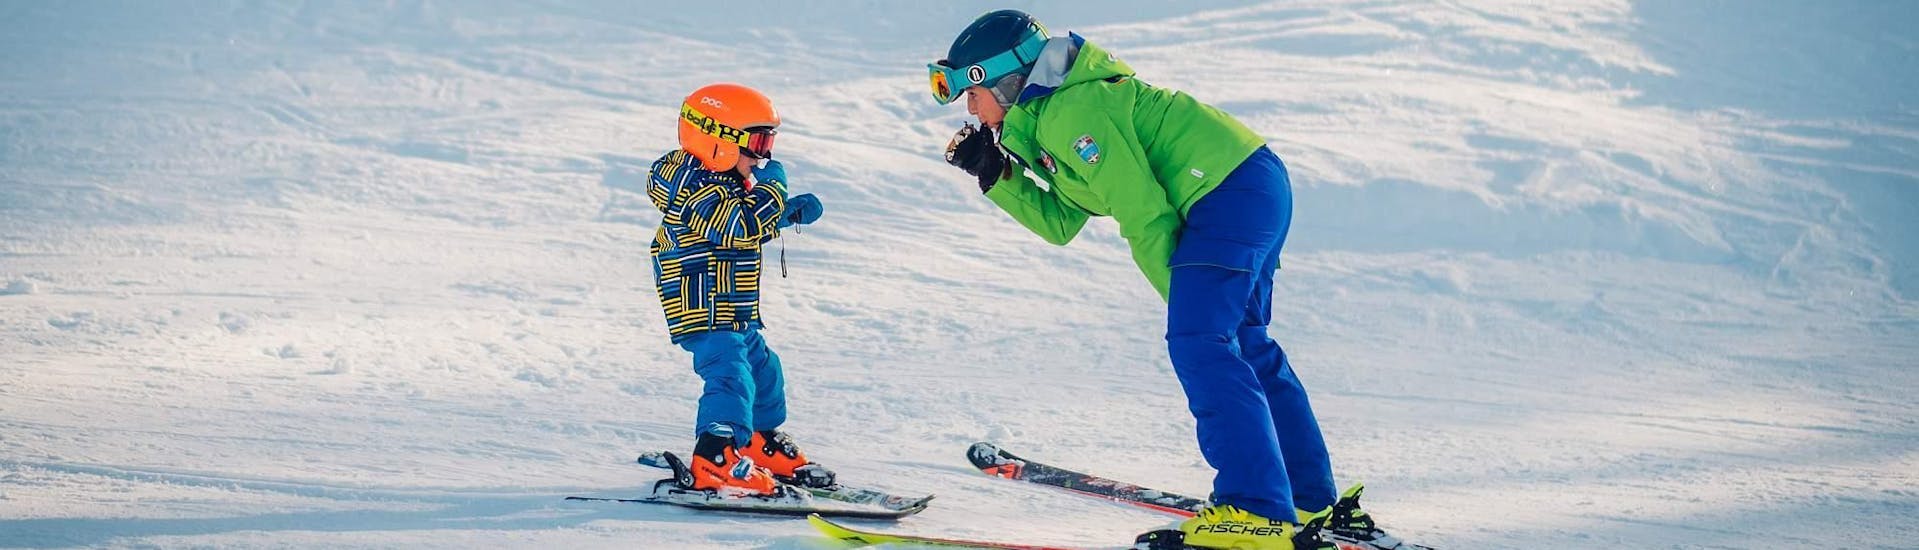 Kleine skiër leert skiën tijdens privé skilessen voor kinderen - alle niveaus met een instructeur van de skischool Scuola di Sci B.foxes.